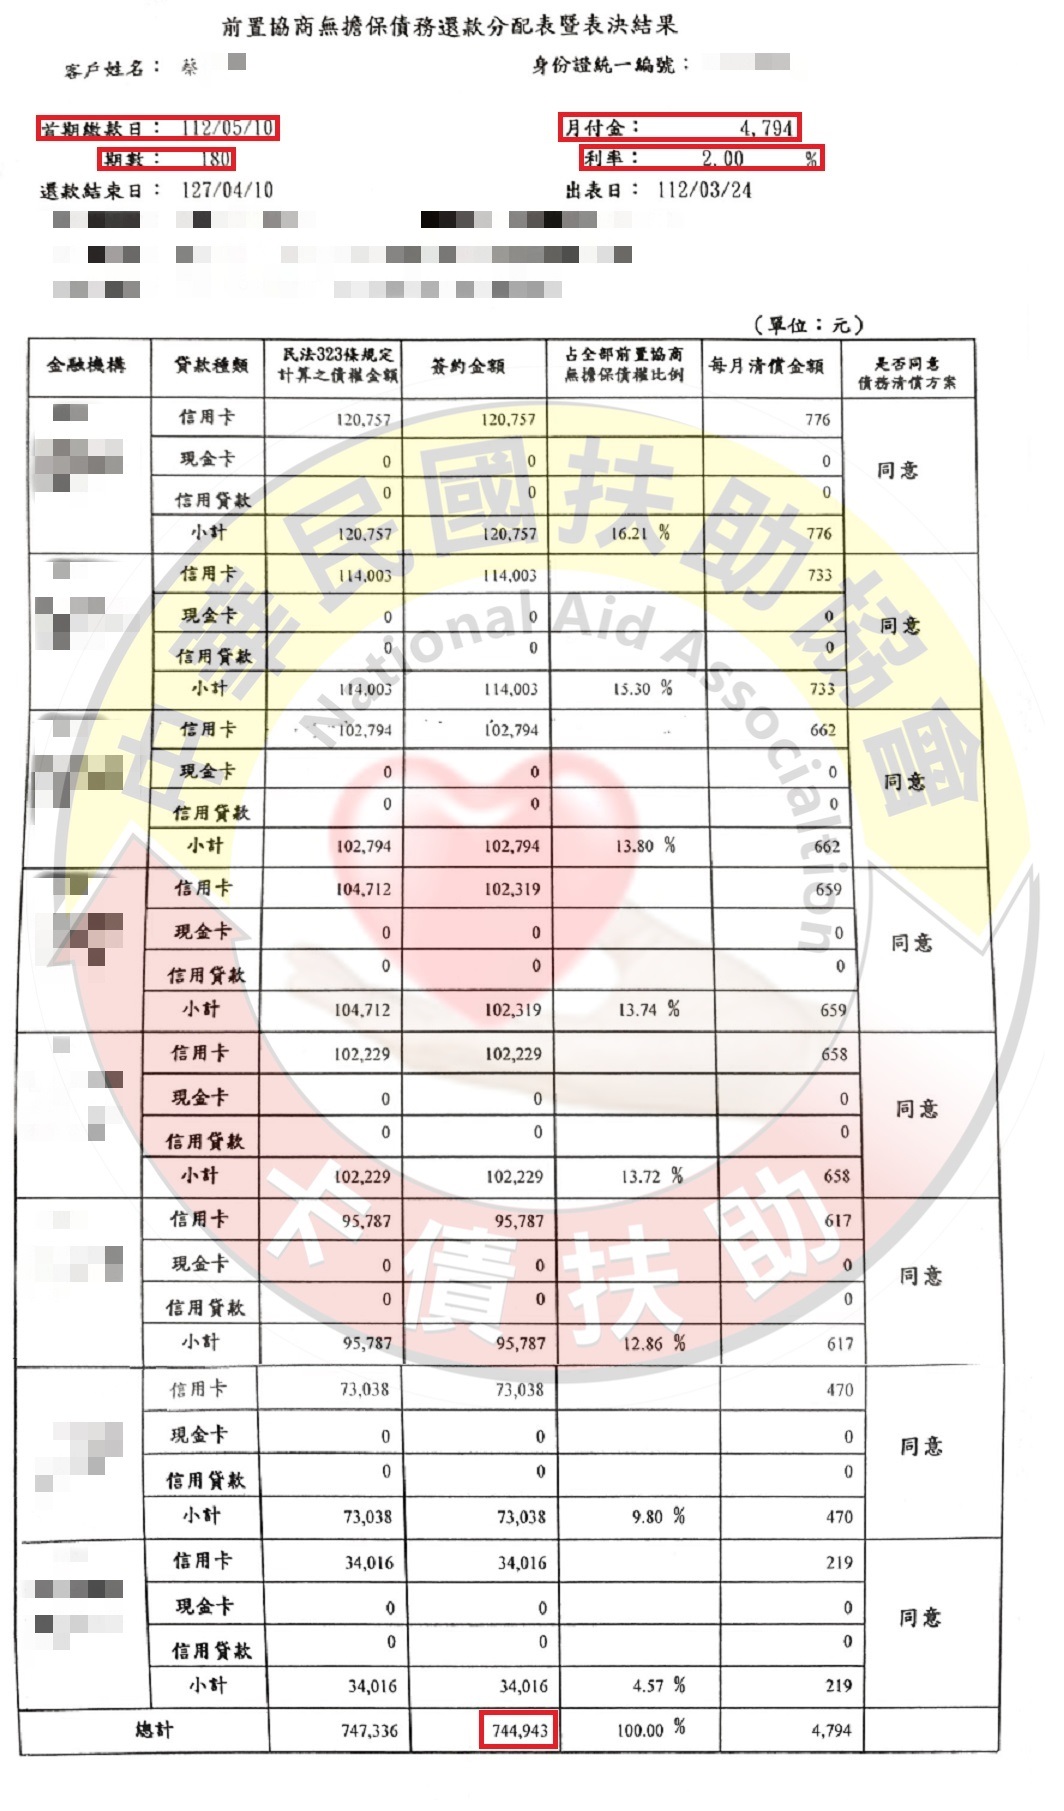 高雄蔡先生/協商成功/原月付34,200元/協議180期2%月付4,794元